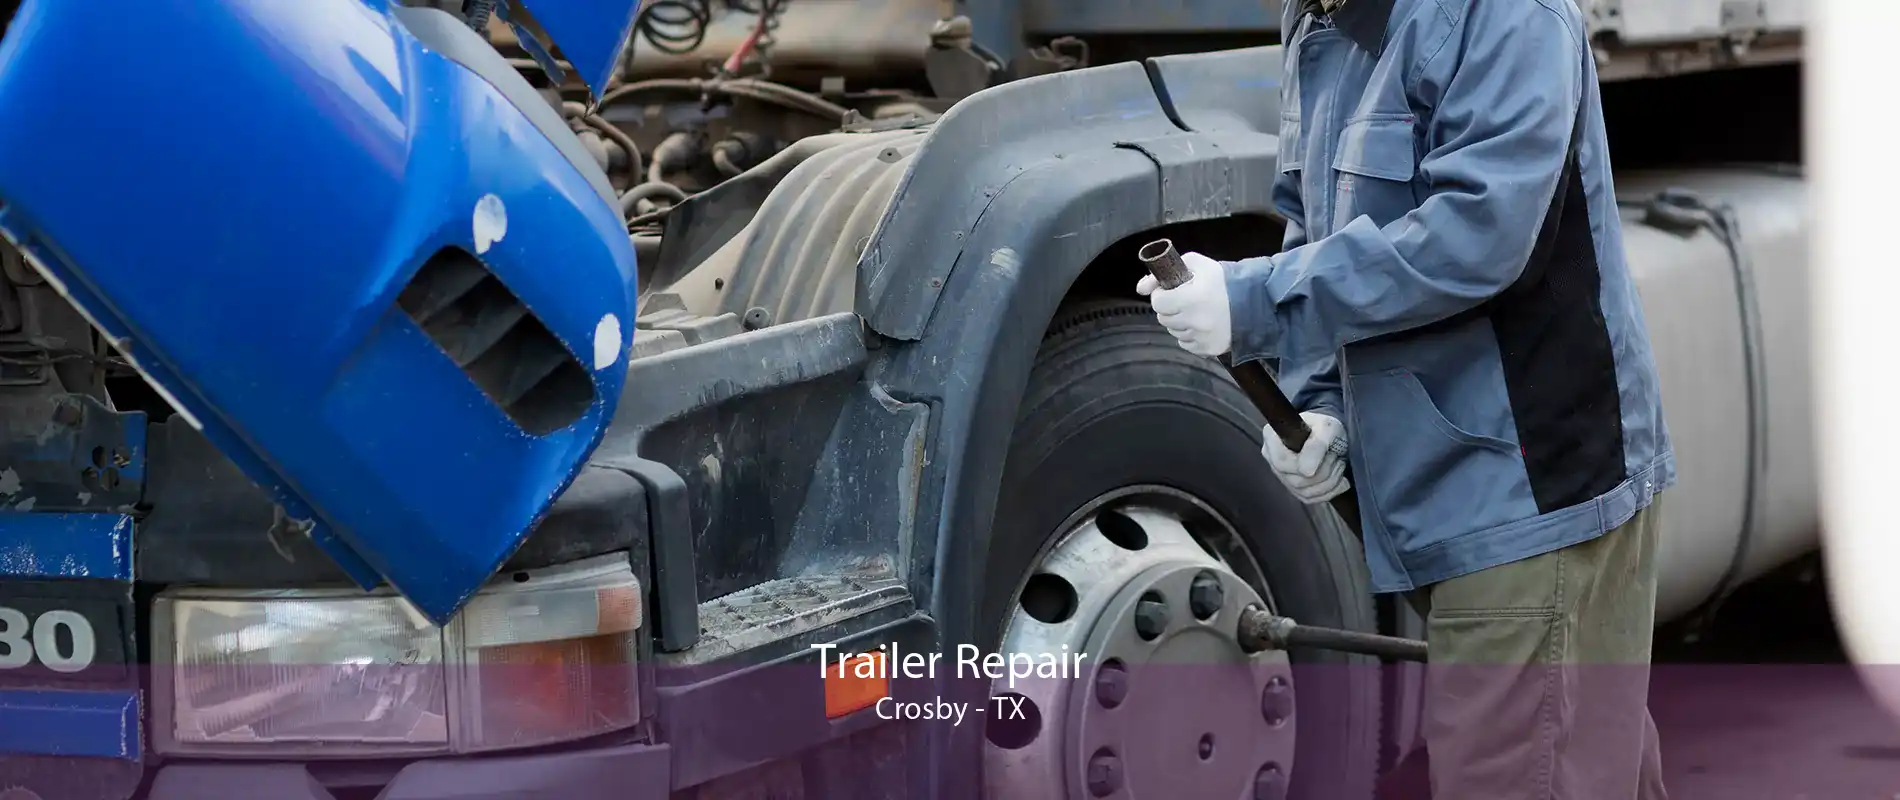 Trailer Repair Crosby - TX